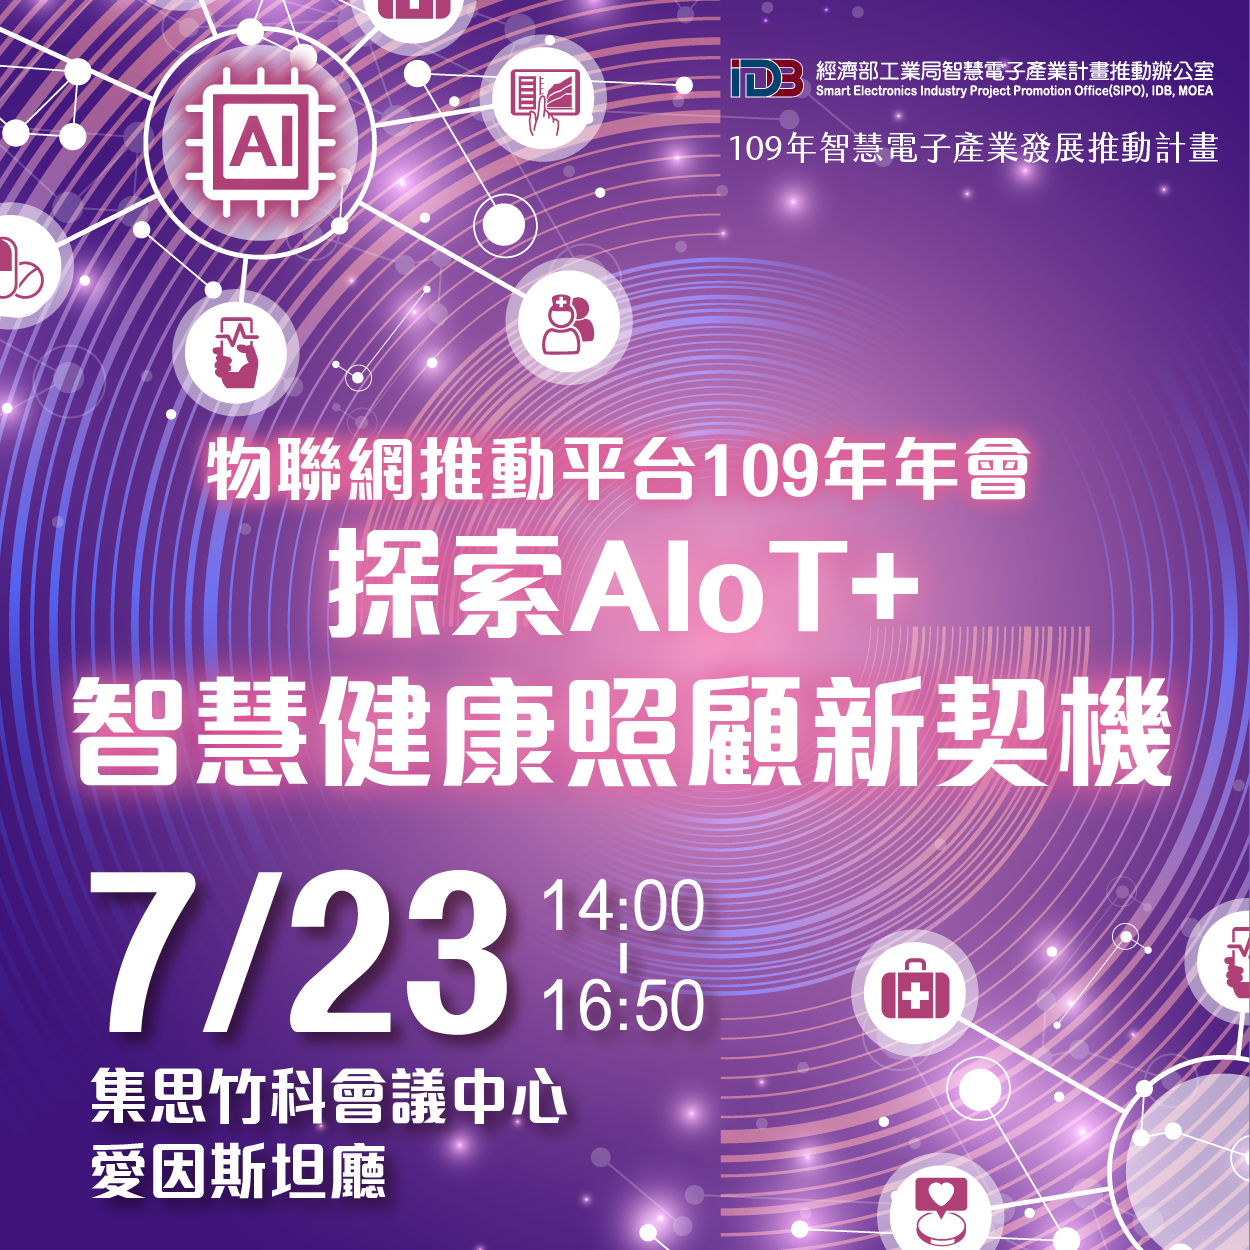 物聯網推動平台109年年會－探索AIoT+智慧健康照顧新契機